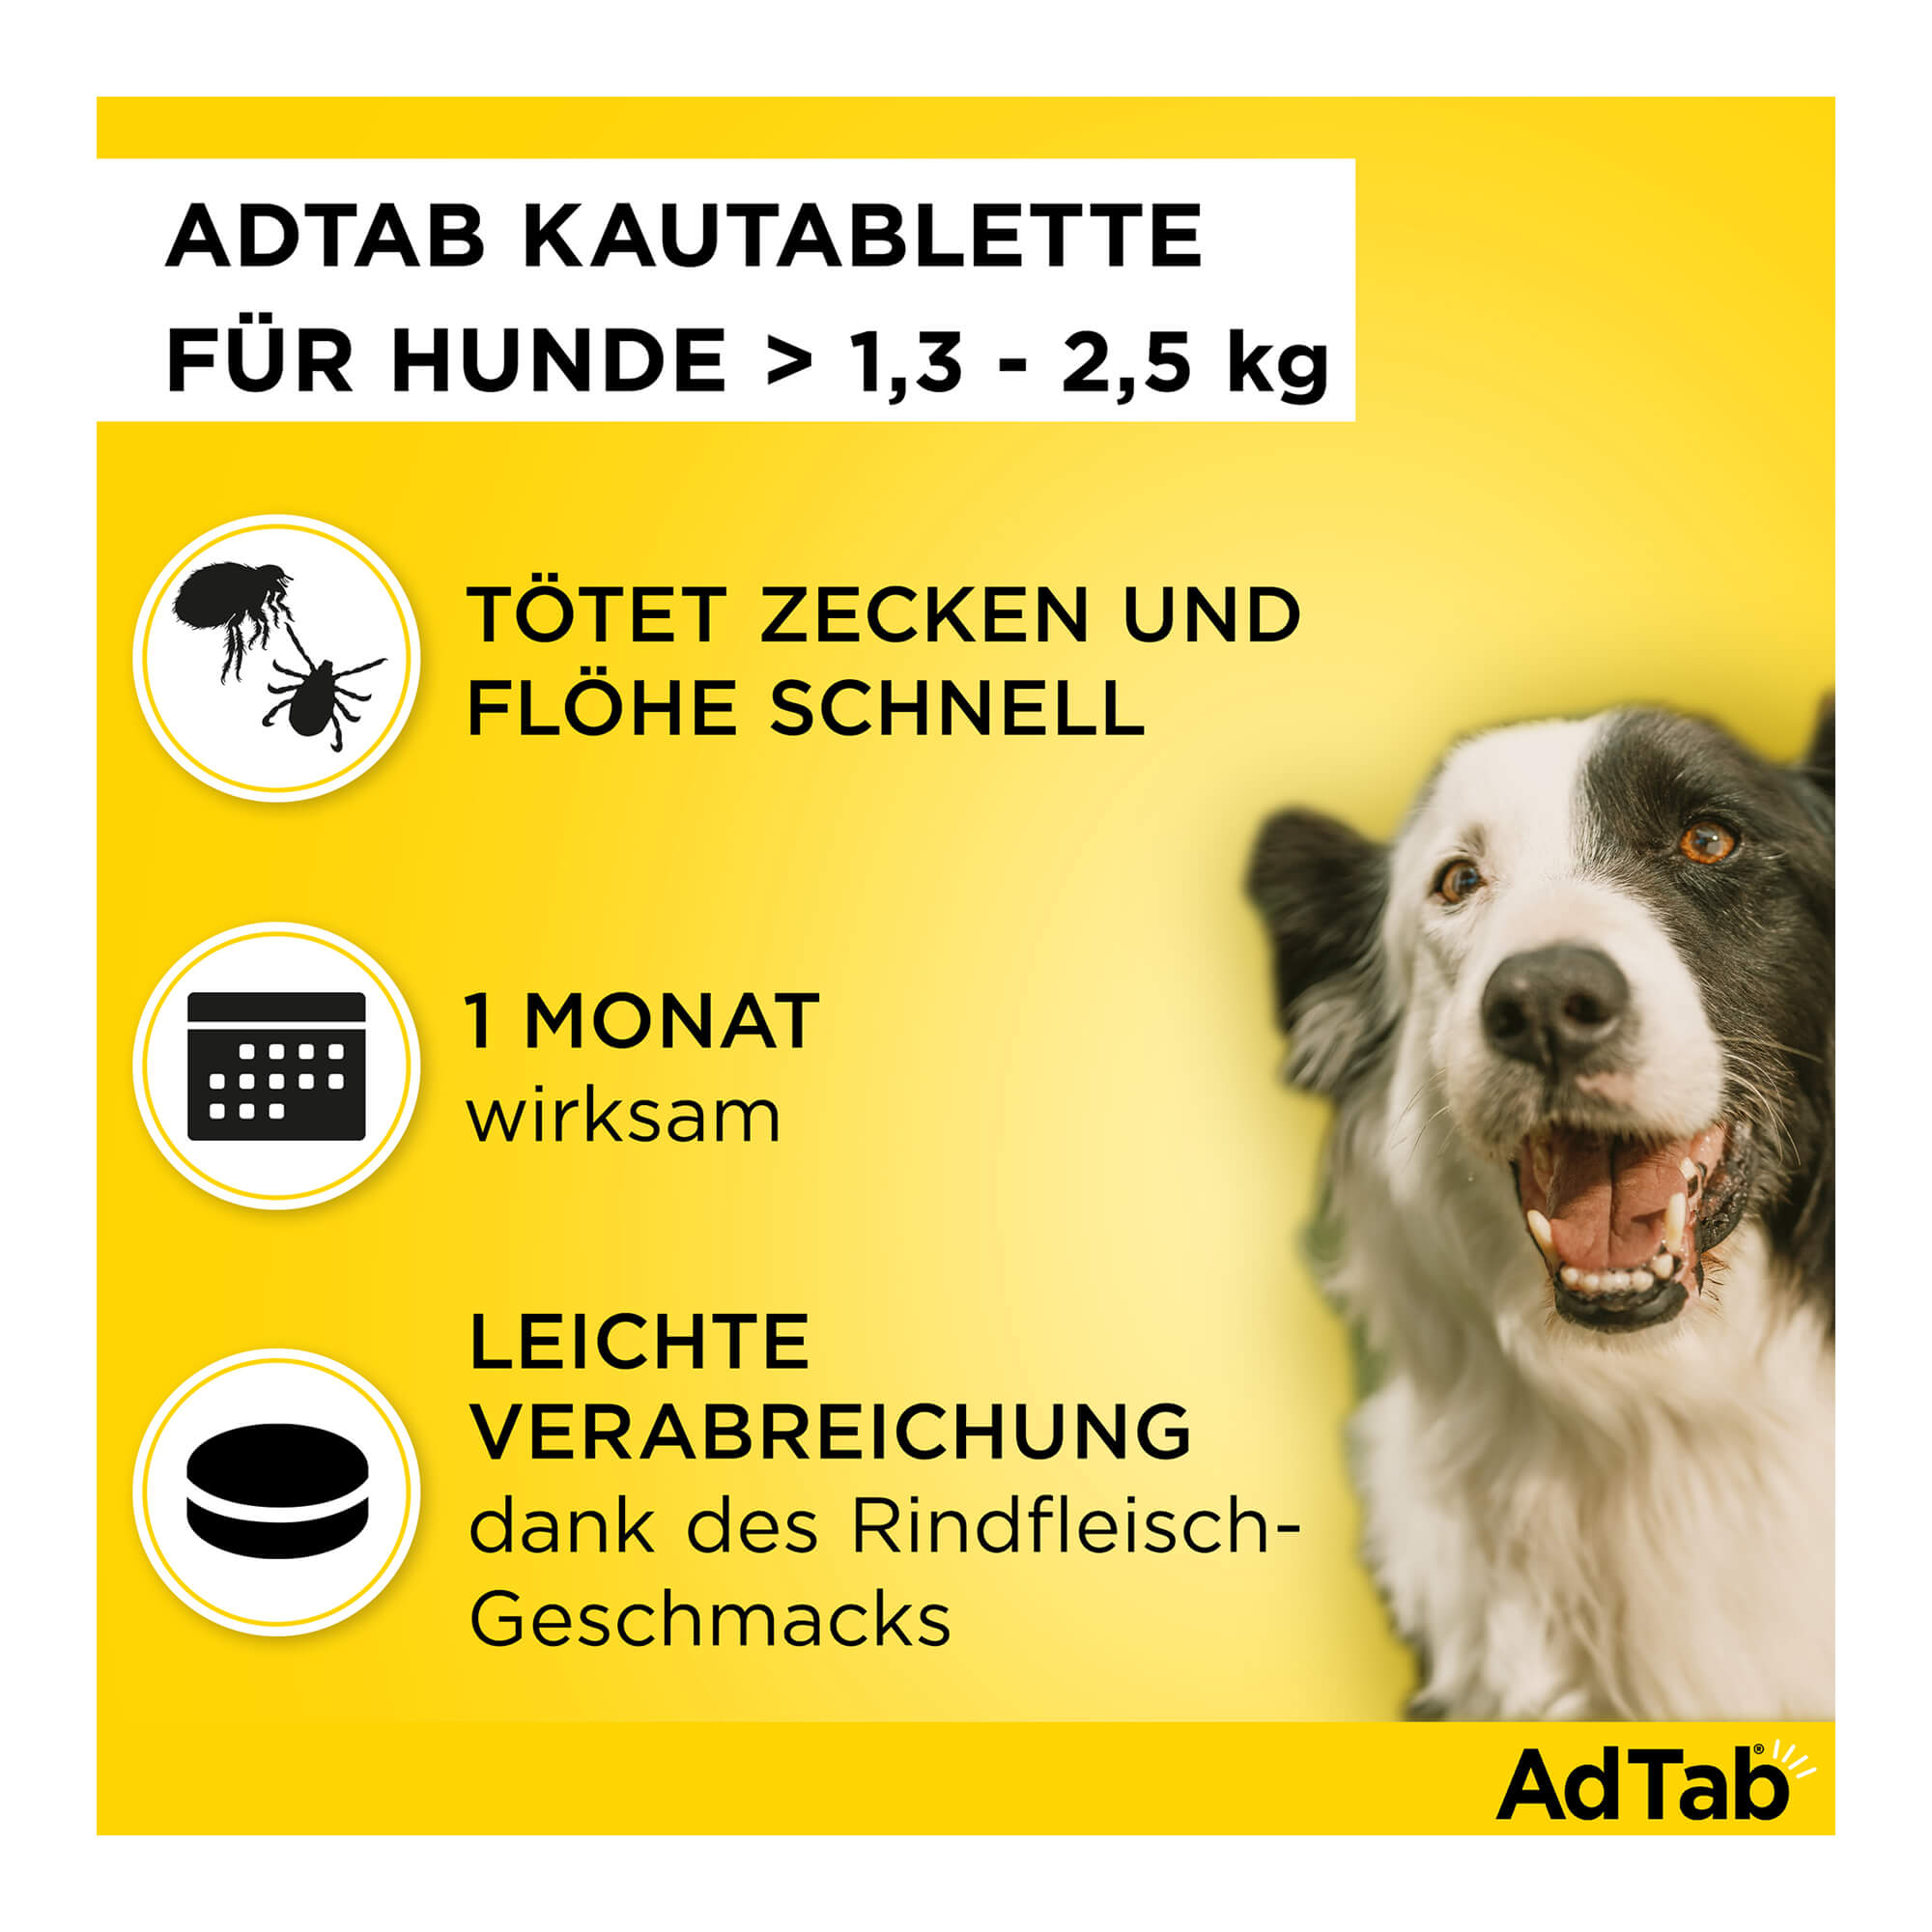 AdTab Kautabletten für Hunde von 1,3 bis 2,5 kg Merkmale